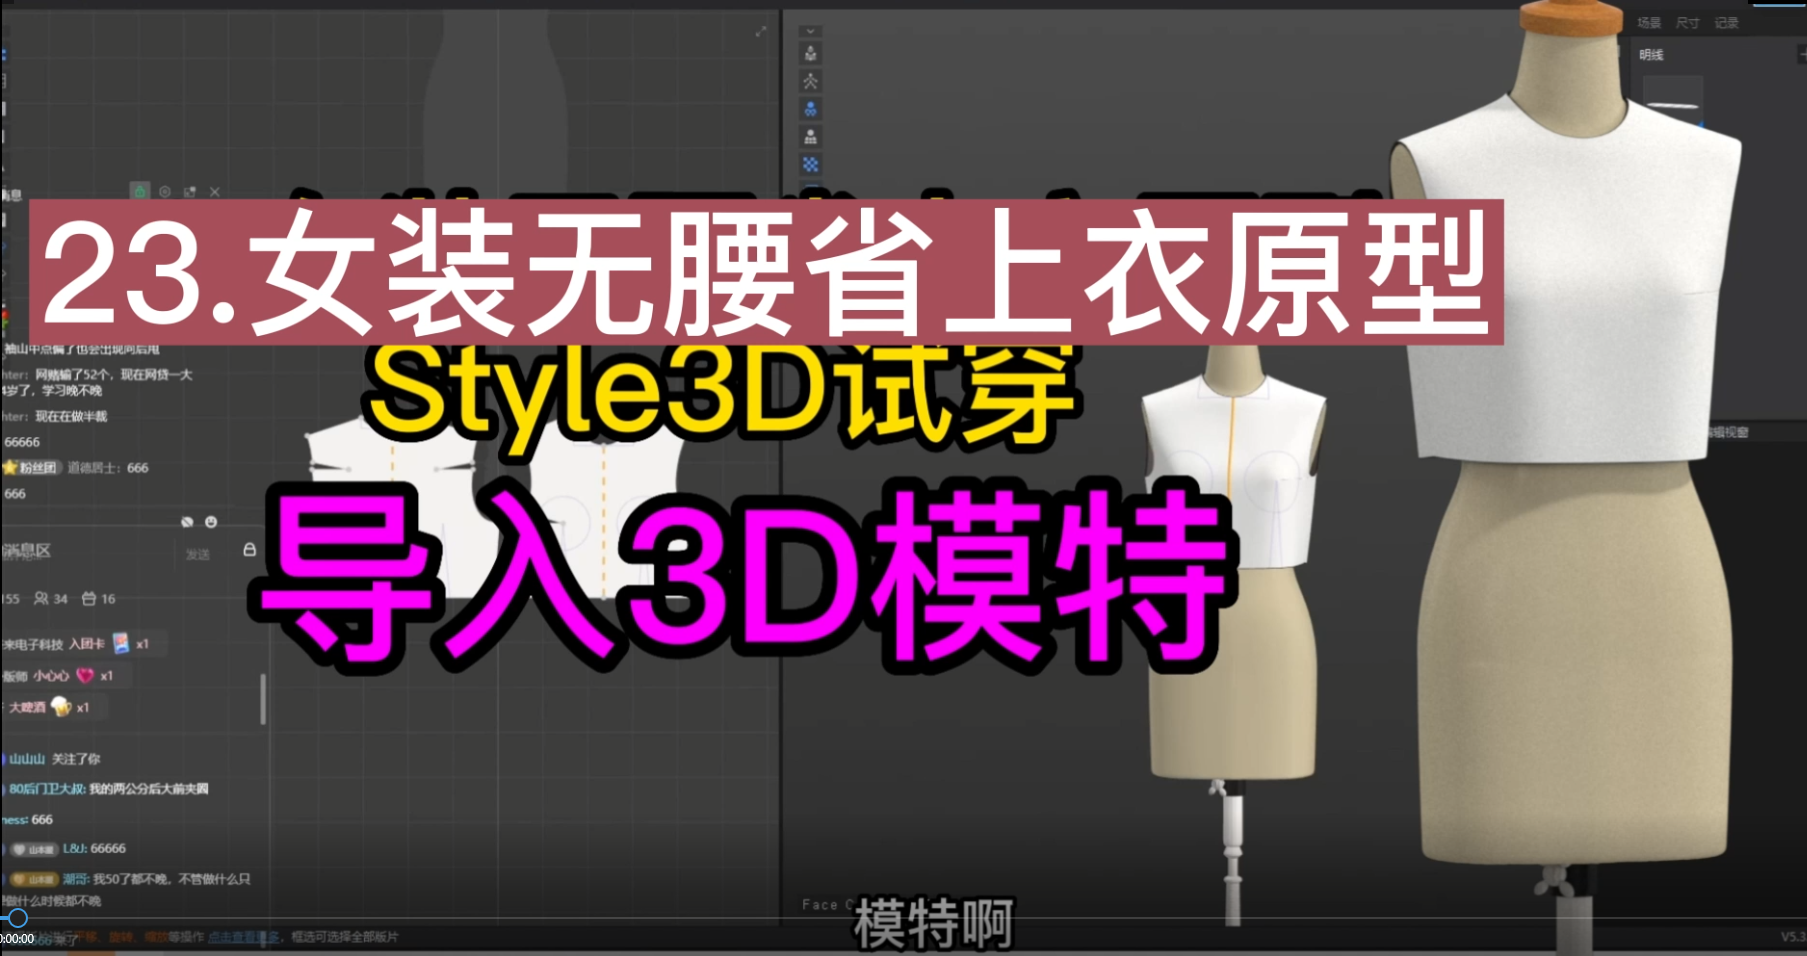 23.女装无腰省上衣原型Style3D试穿-导入3D模特